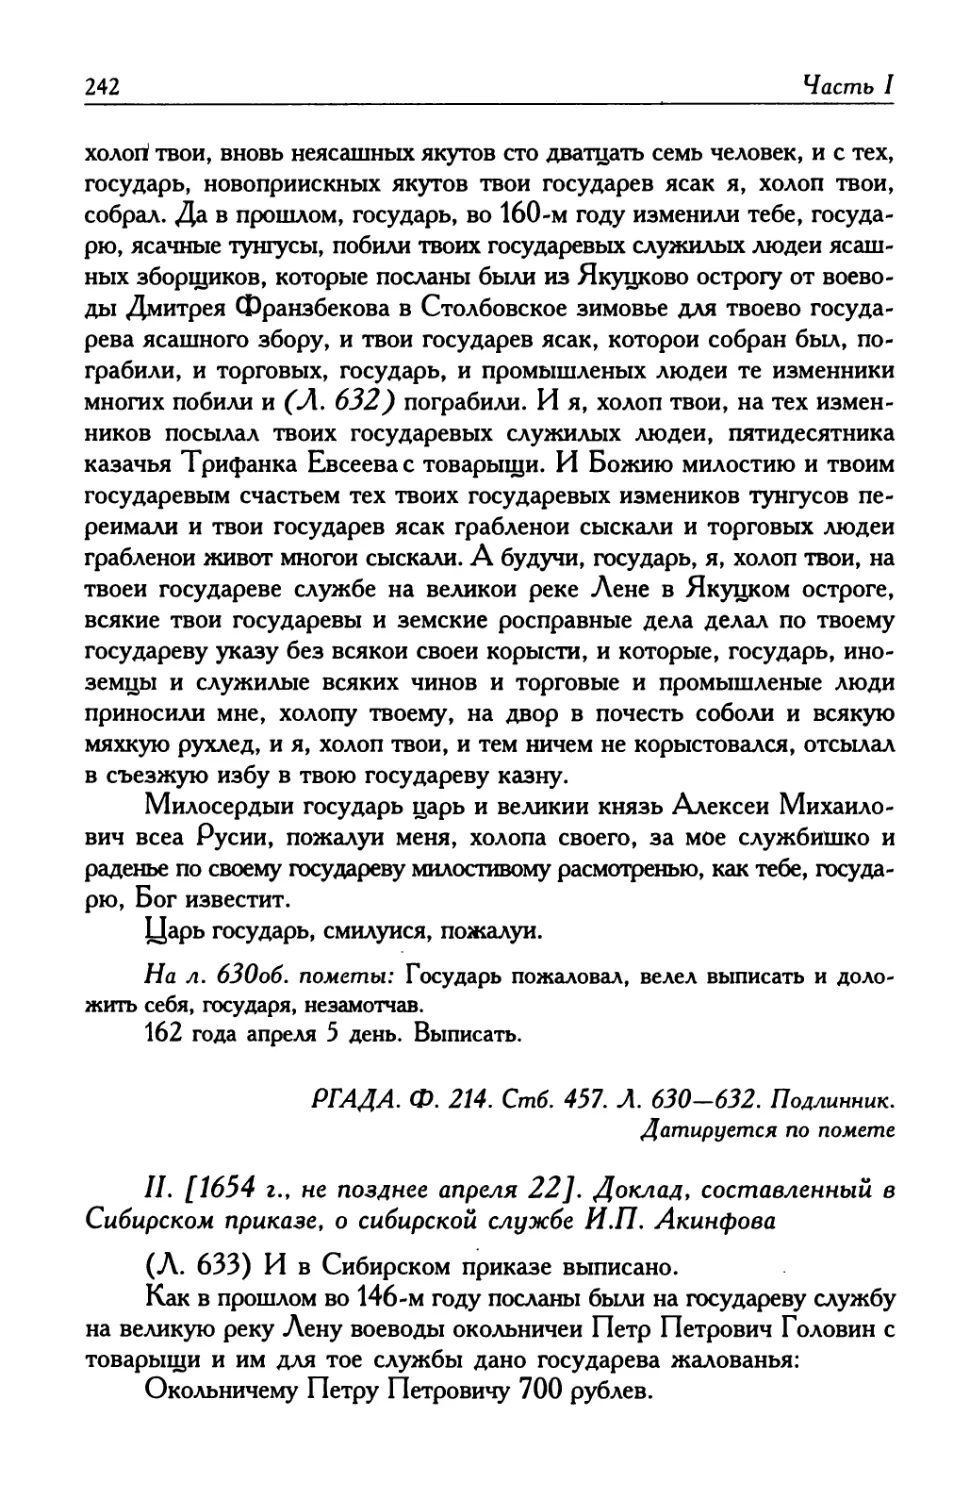 II. [1654 г., не позднее апреля 22]. Доклад, составленный в Сибирском приказе, о сибирской службе И. П. Акинфова